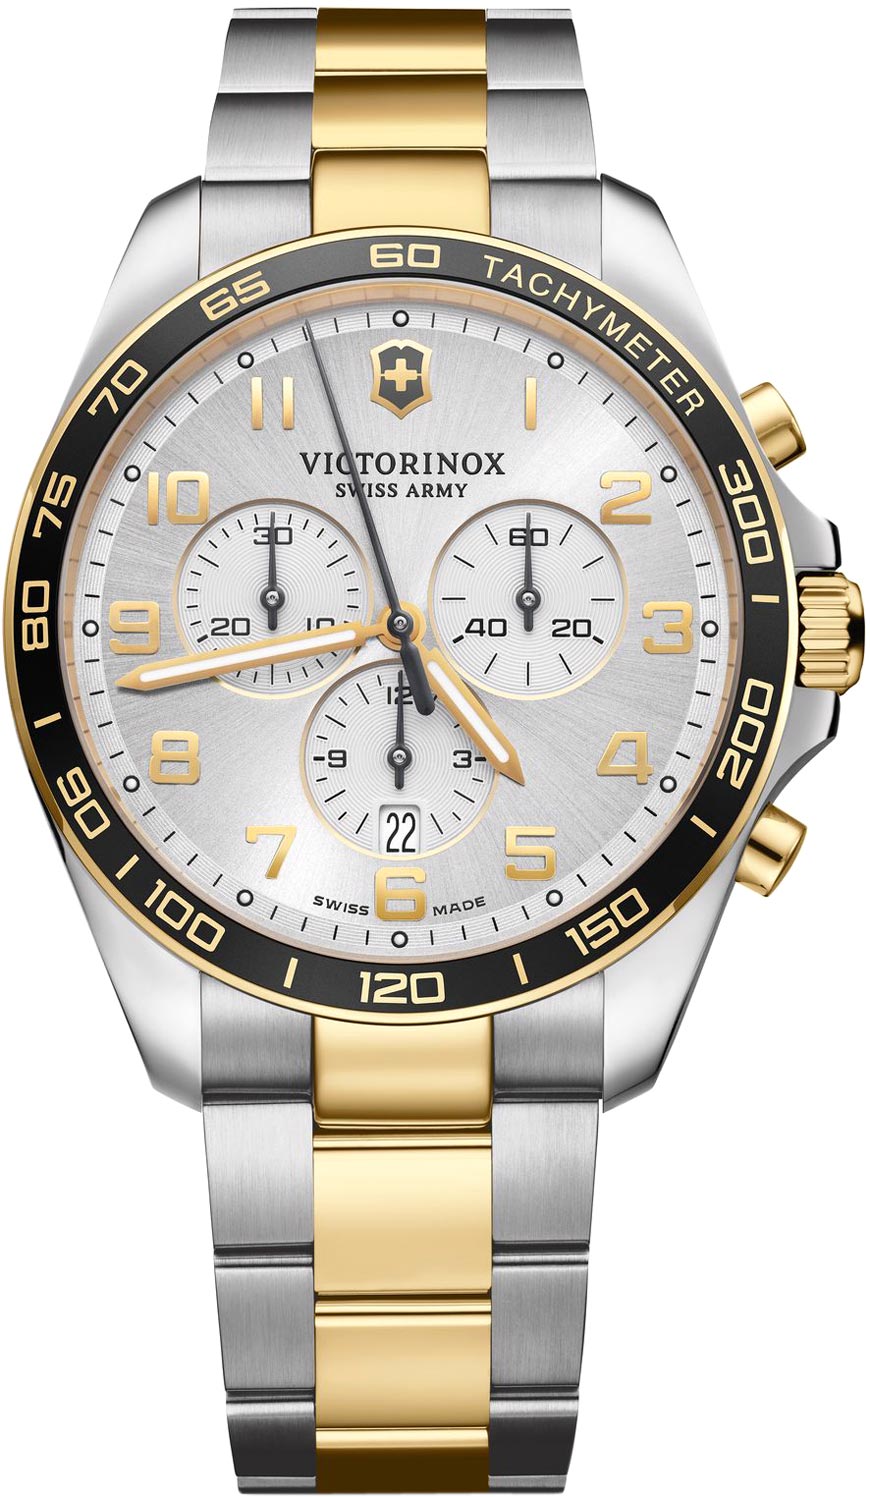 Швейцарские наручные часы Victorinox 241903 с хронографом